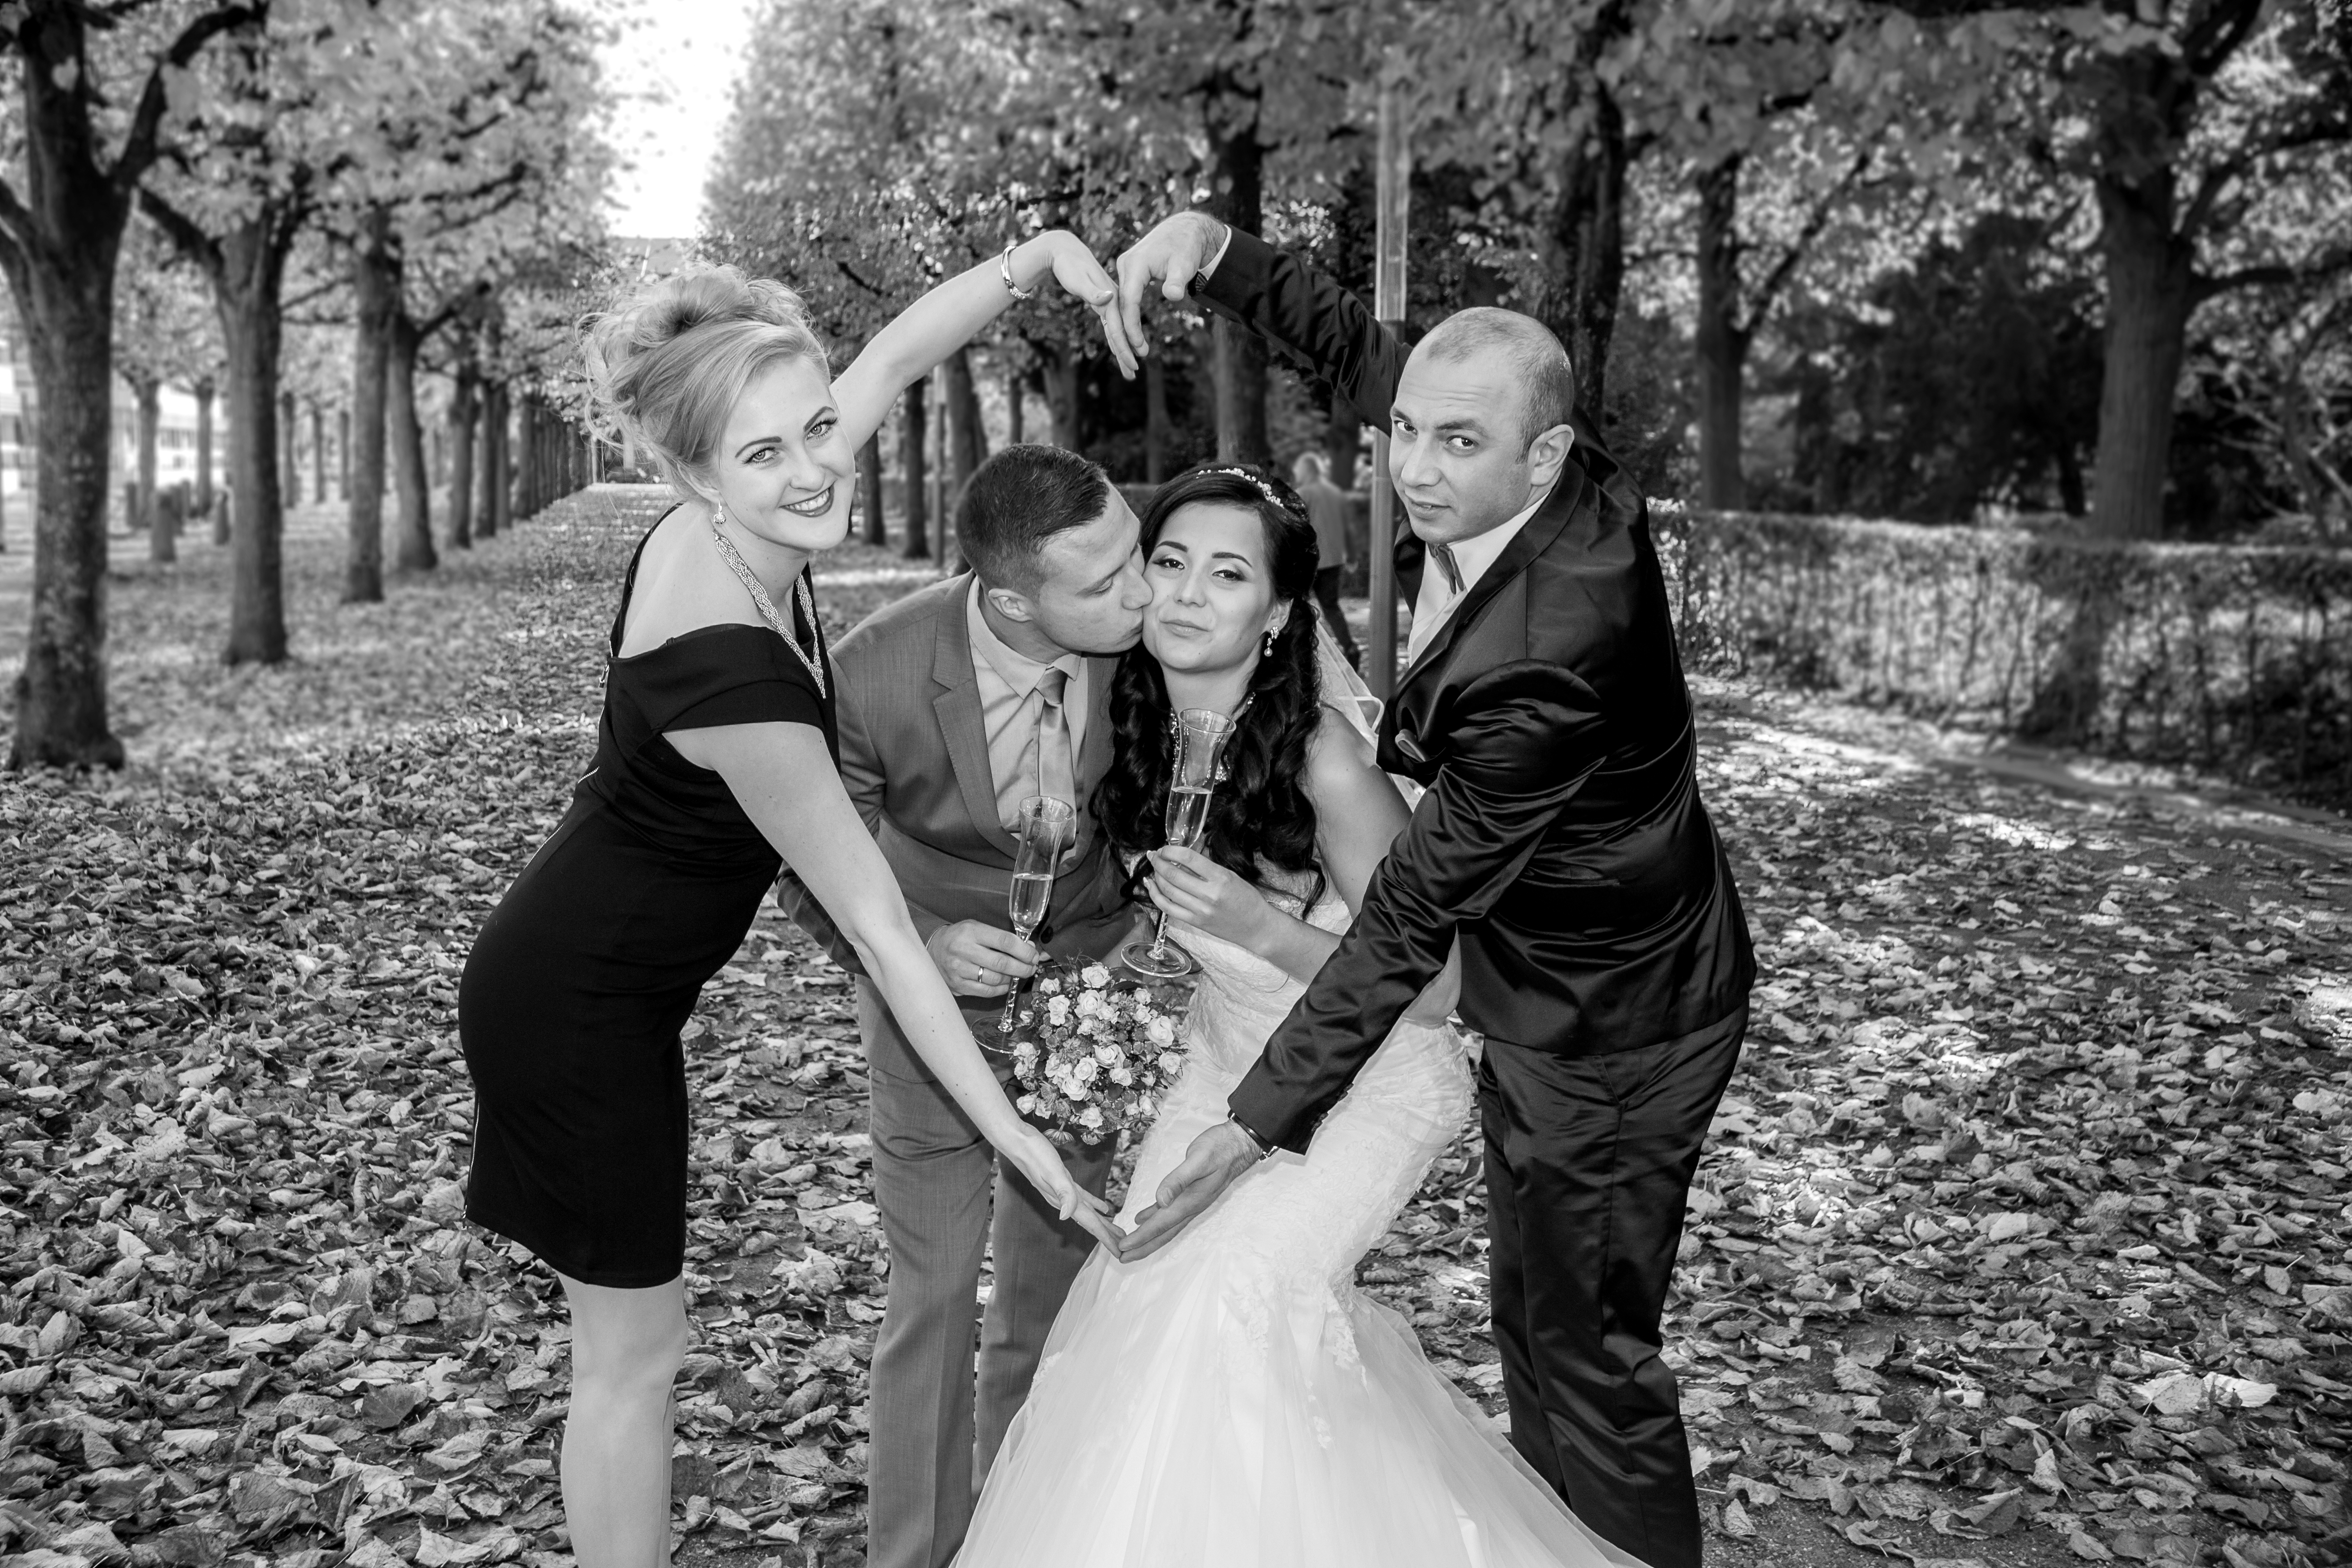 Hochzeitsfotograf Bruchsal erstellt Hochzeitsreportagen, bietet Paarshootings &amp;amp; Videos im modernen, kreativen und echten Stil an